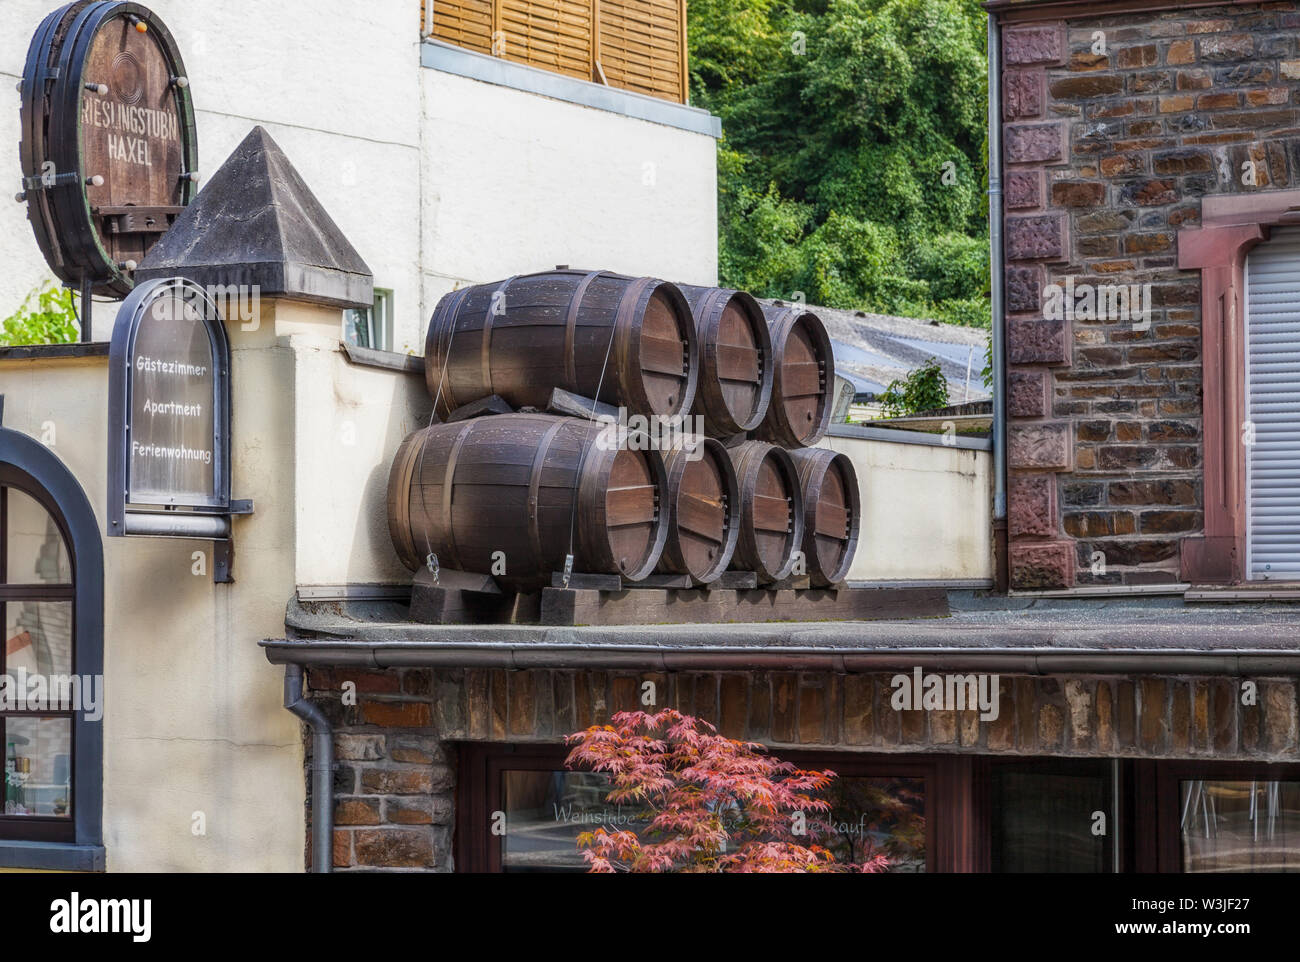 Cochem, Allemagne - 02 août 2014 : des tonneaux de vin sur la verrière d'un hôtel et un bar à vin dans la ville de Cochem sur la Moselle en Allemagne. Banque D'Images